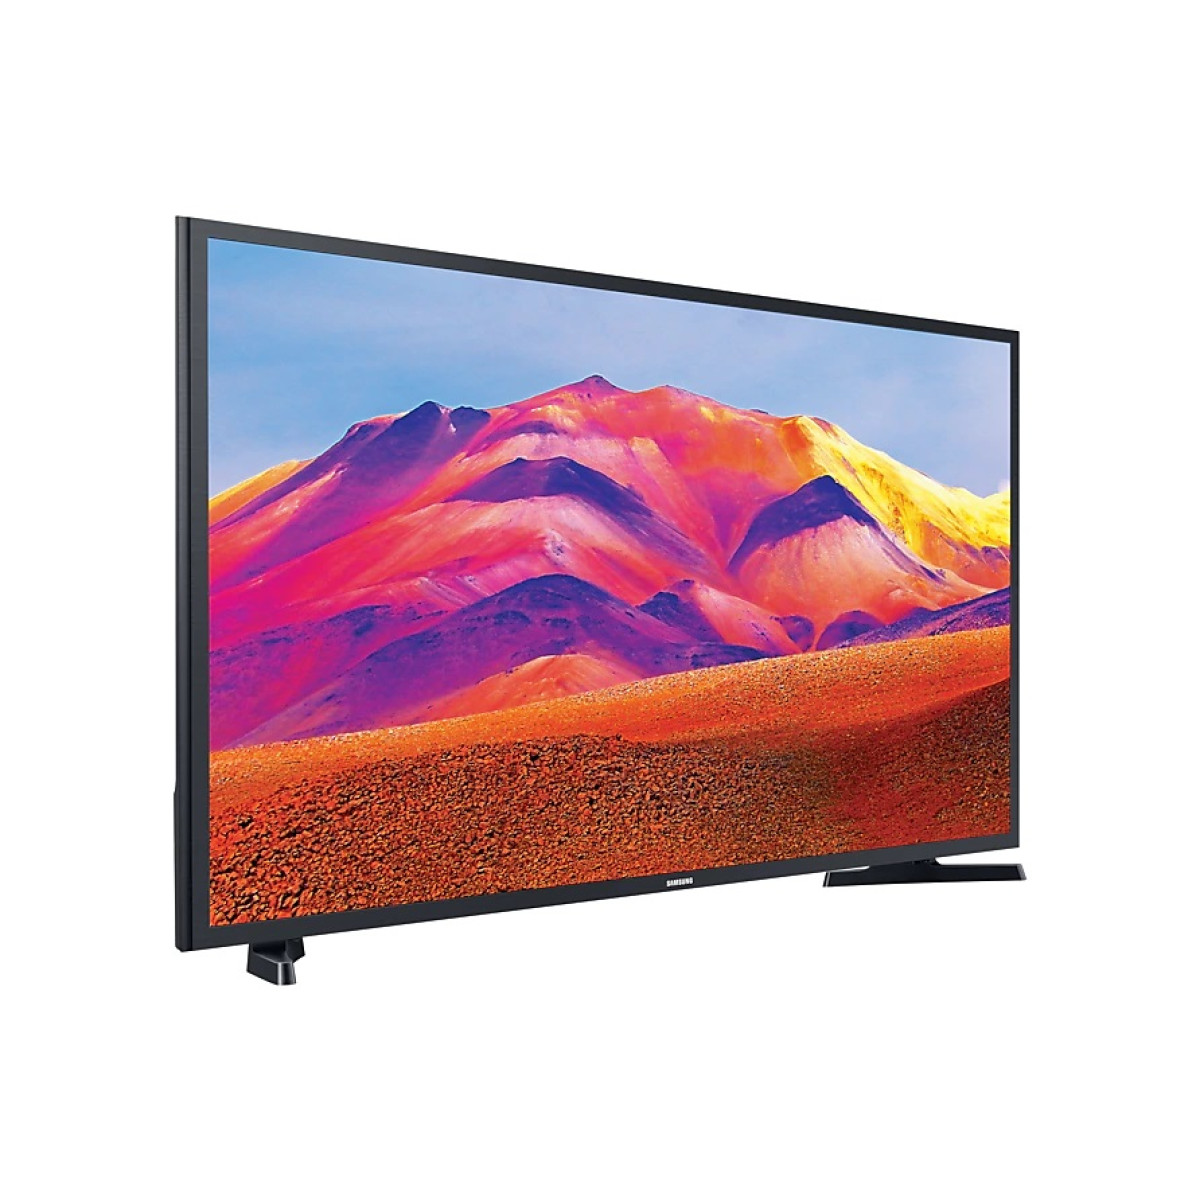 Τηλεόραση Samsung Smart LED UE32T5302 HDR 32" Full HD  Τηλεοράσεις